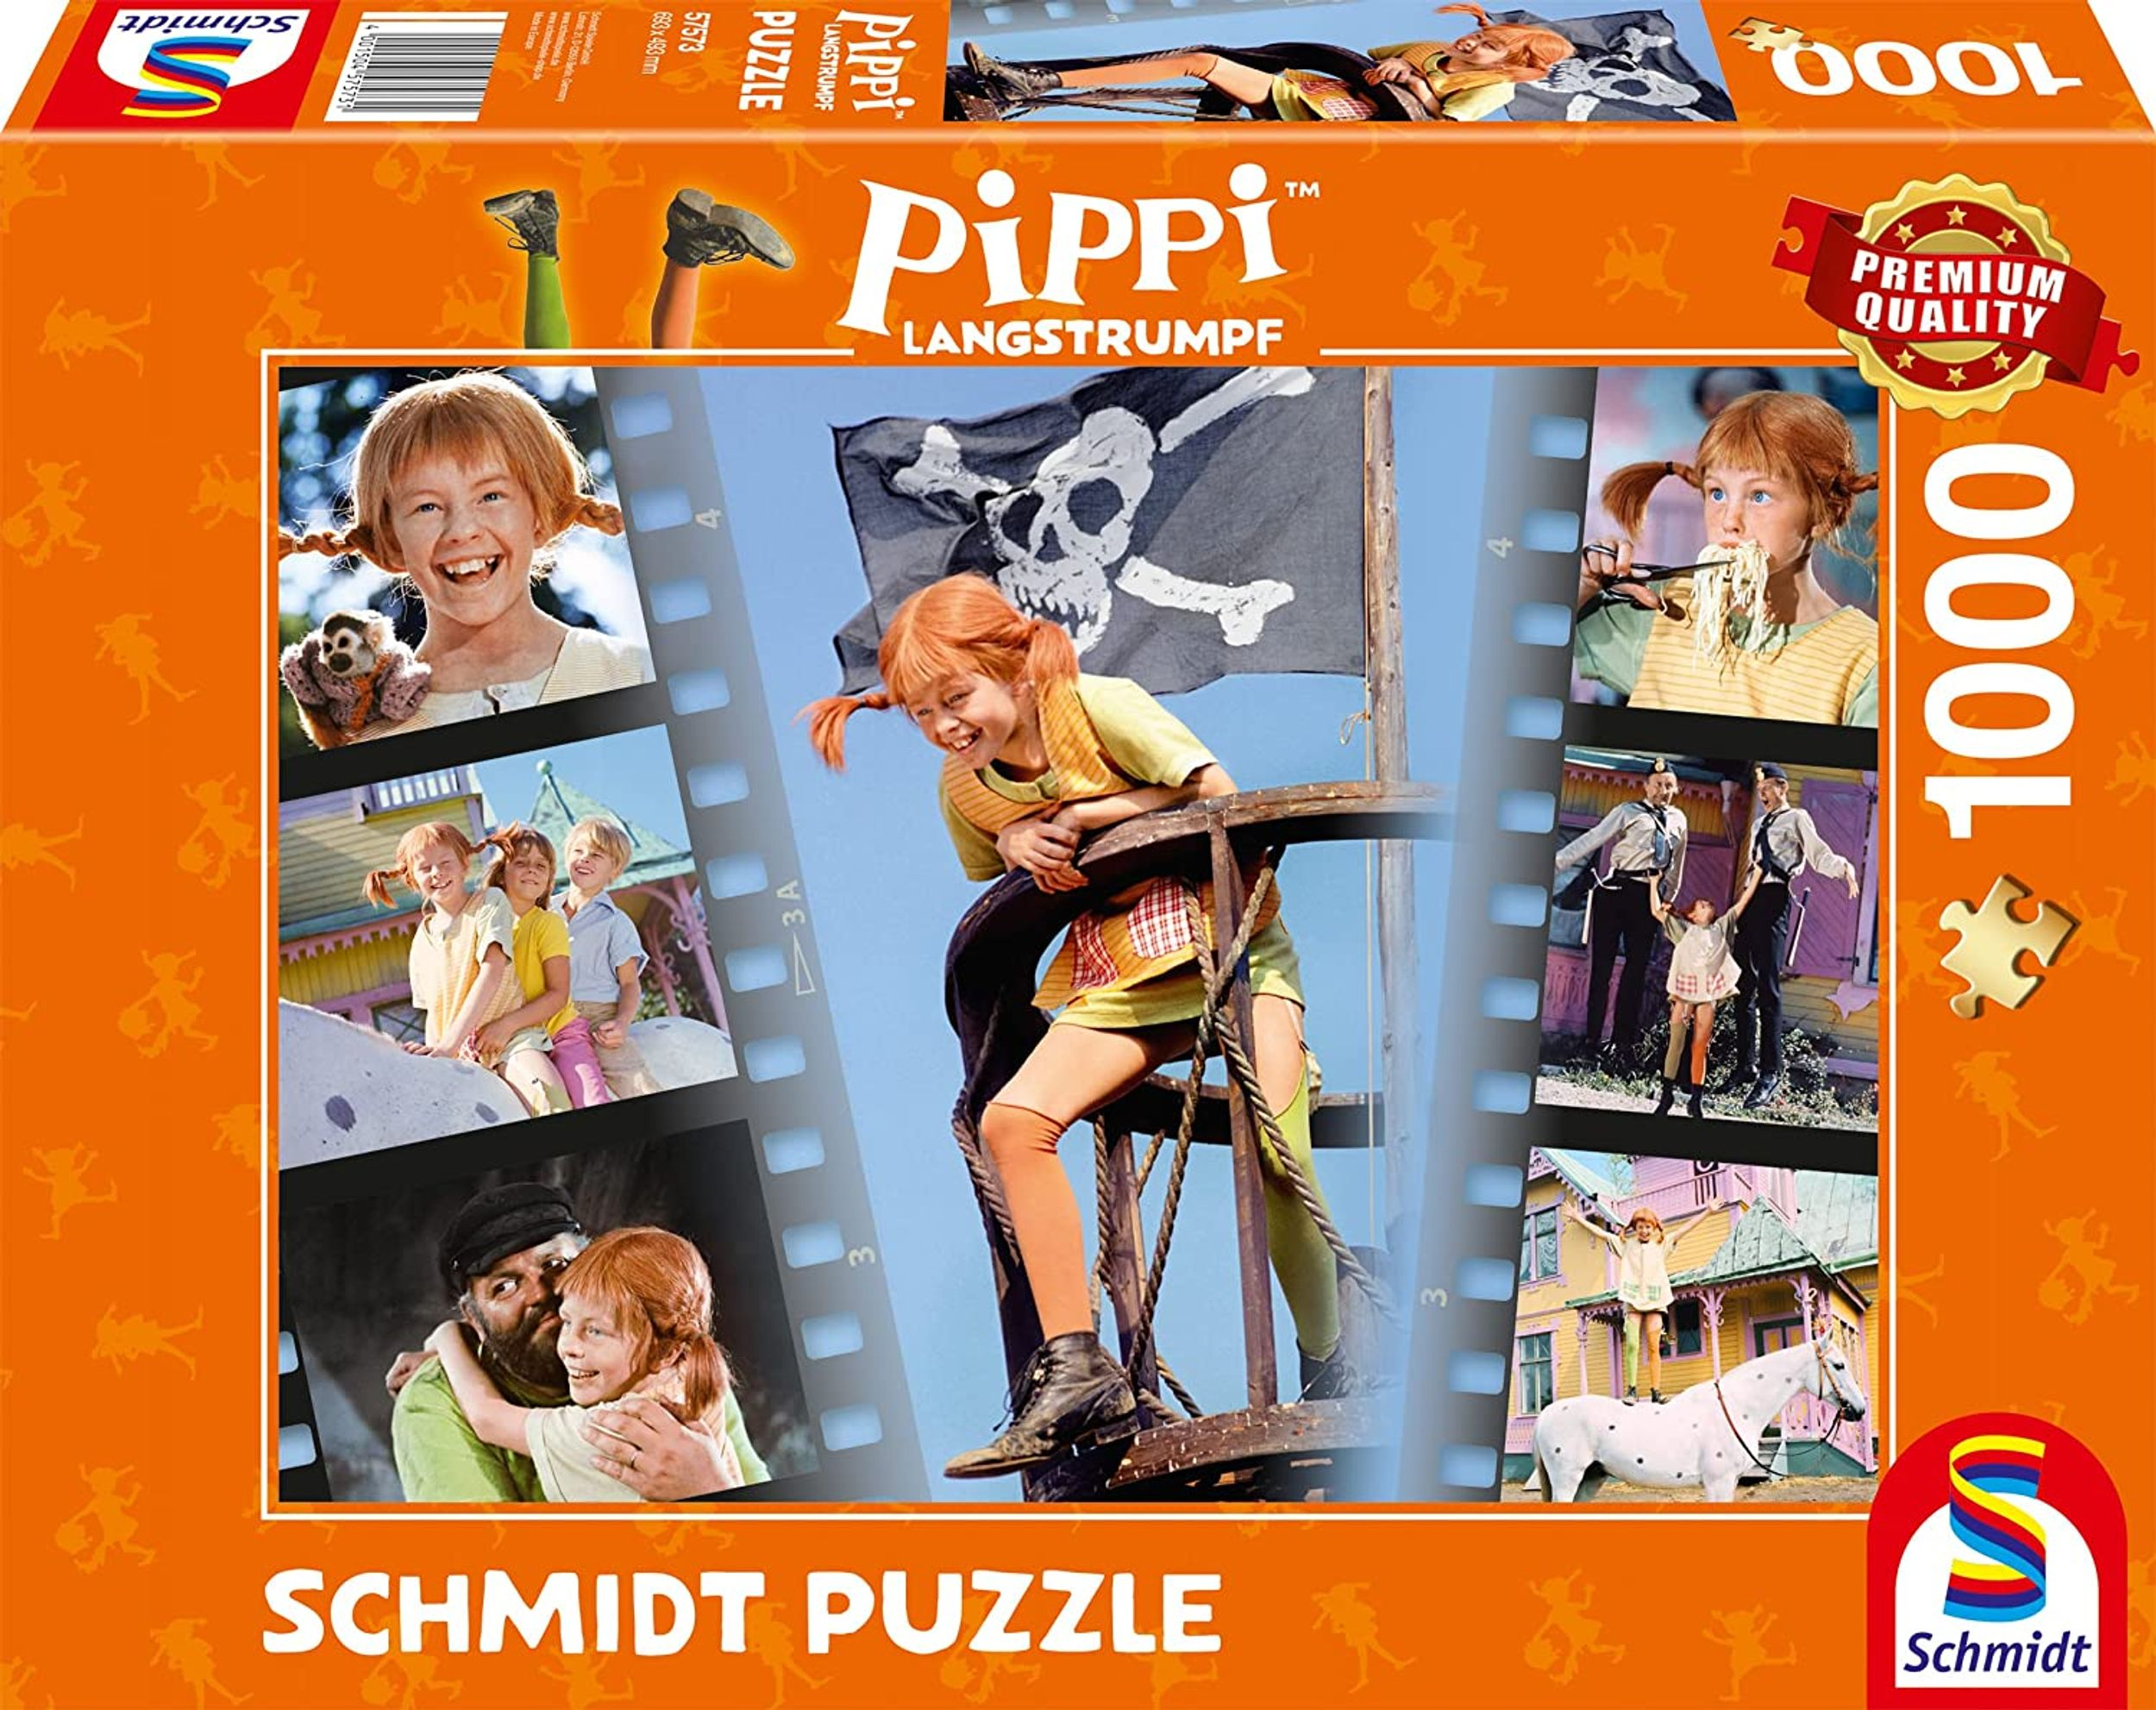 SCHMIDT SPIELE Pippi und frech wunderbar Puzzle Sei - wild Langstrumpf